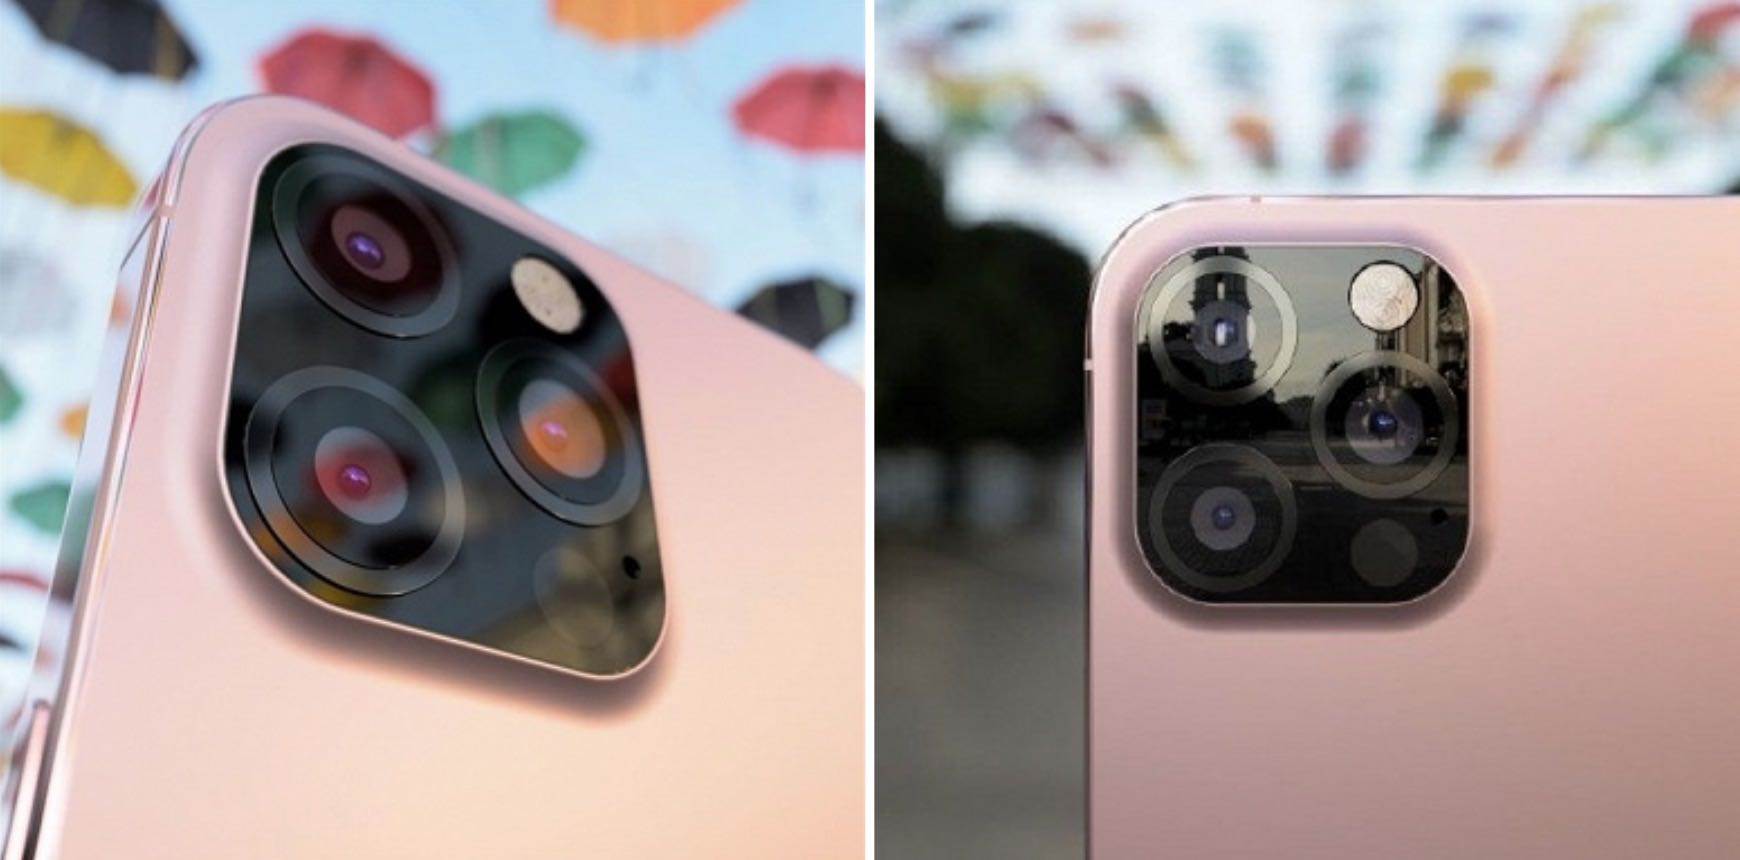 Powrót do korzeni. Różowy iPhone 12s Pro z nowym aparatem pokazany na renderach polecane, ciekawostki rendery, iPhone 12s Pro, iPhone 12s  W sieci pojawiły się nowe nieoficjalne rendery iPhone?a 12s w różowym kolorze i blokiem kamery w stylu iPhone?a 7. Jak Wam się podoba? iPhone12s 1 1